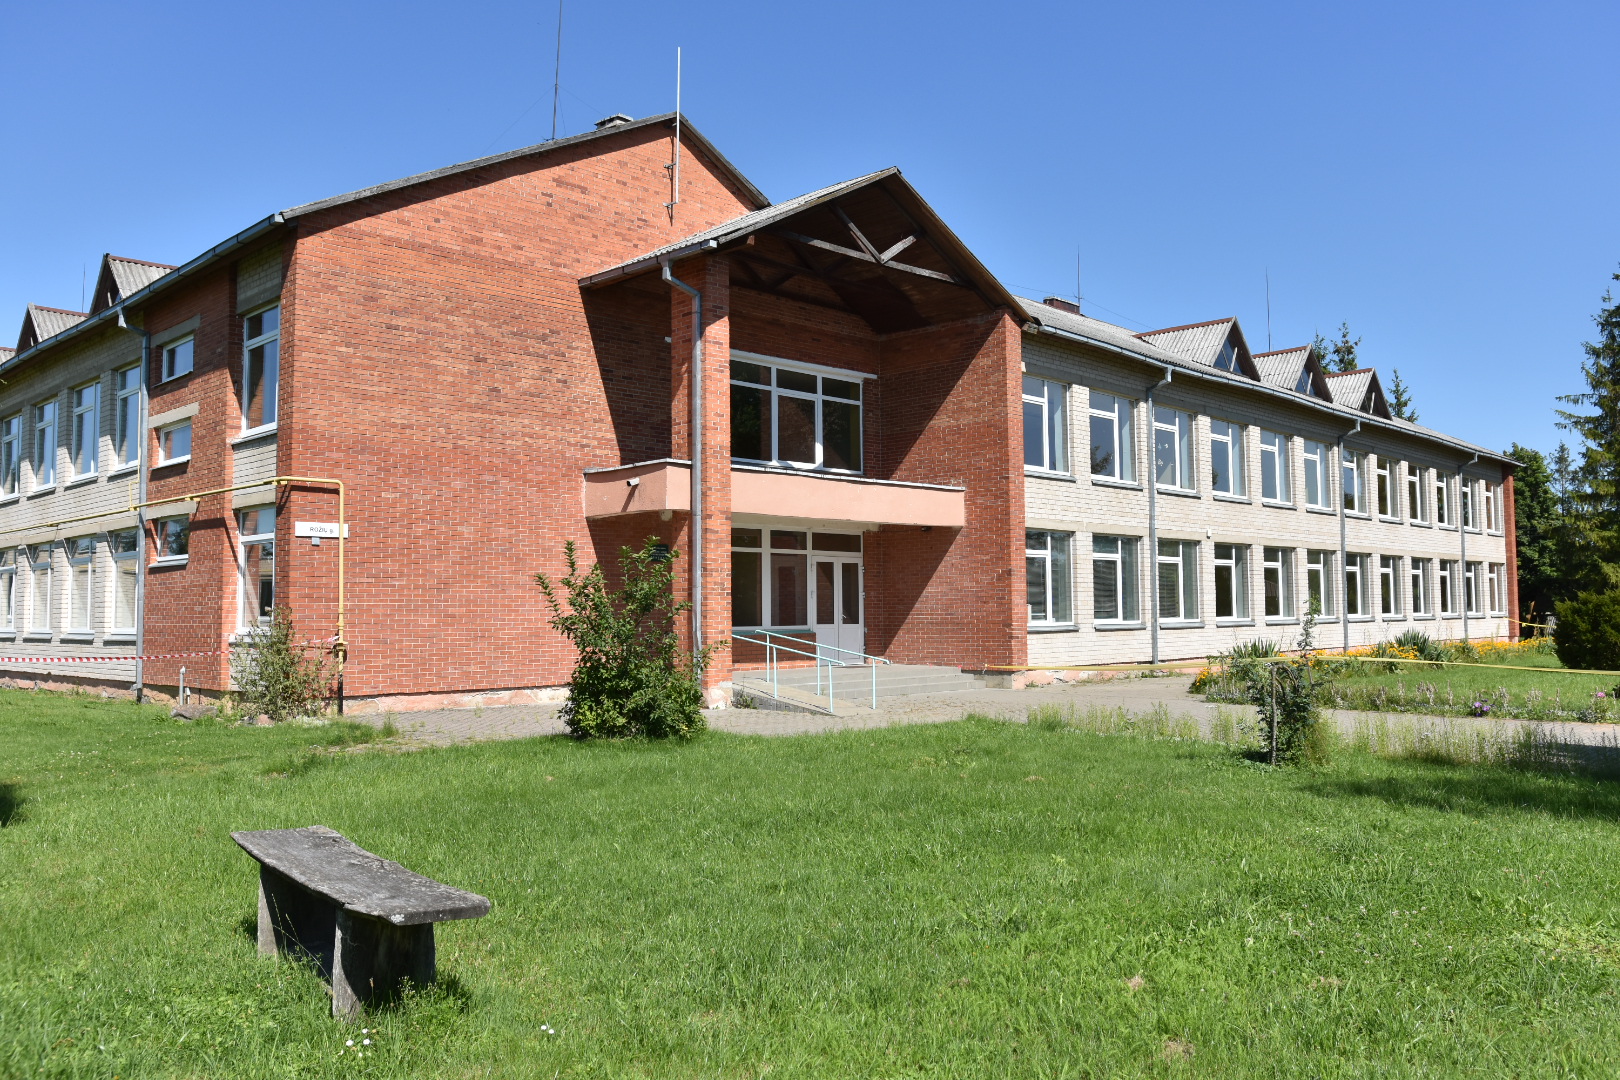 Panevėžio rajono savivaldybei pavyko per rekordiškai trumpą laiką parduoti vos už aštuonių kilometrų nuo miesto esančių Berčiūnų uždarytos mokyklos pastatą.